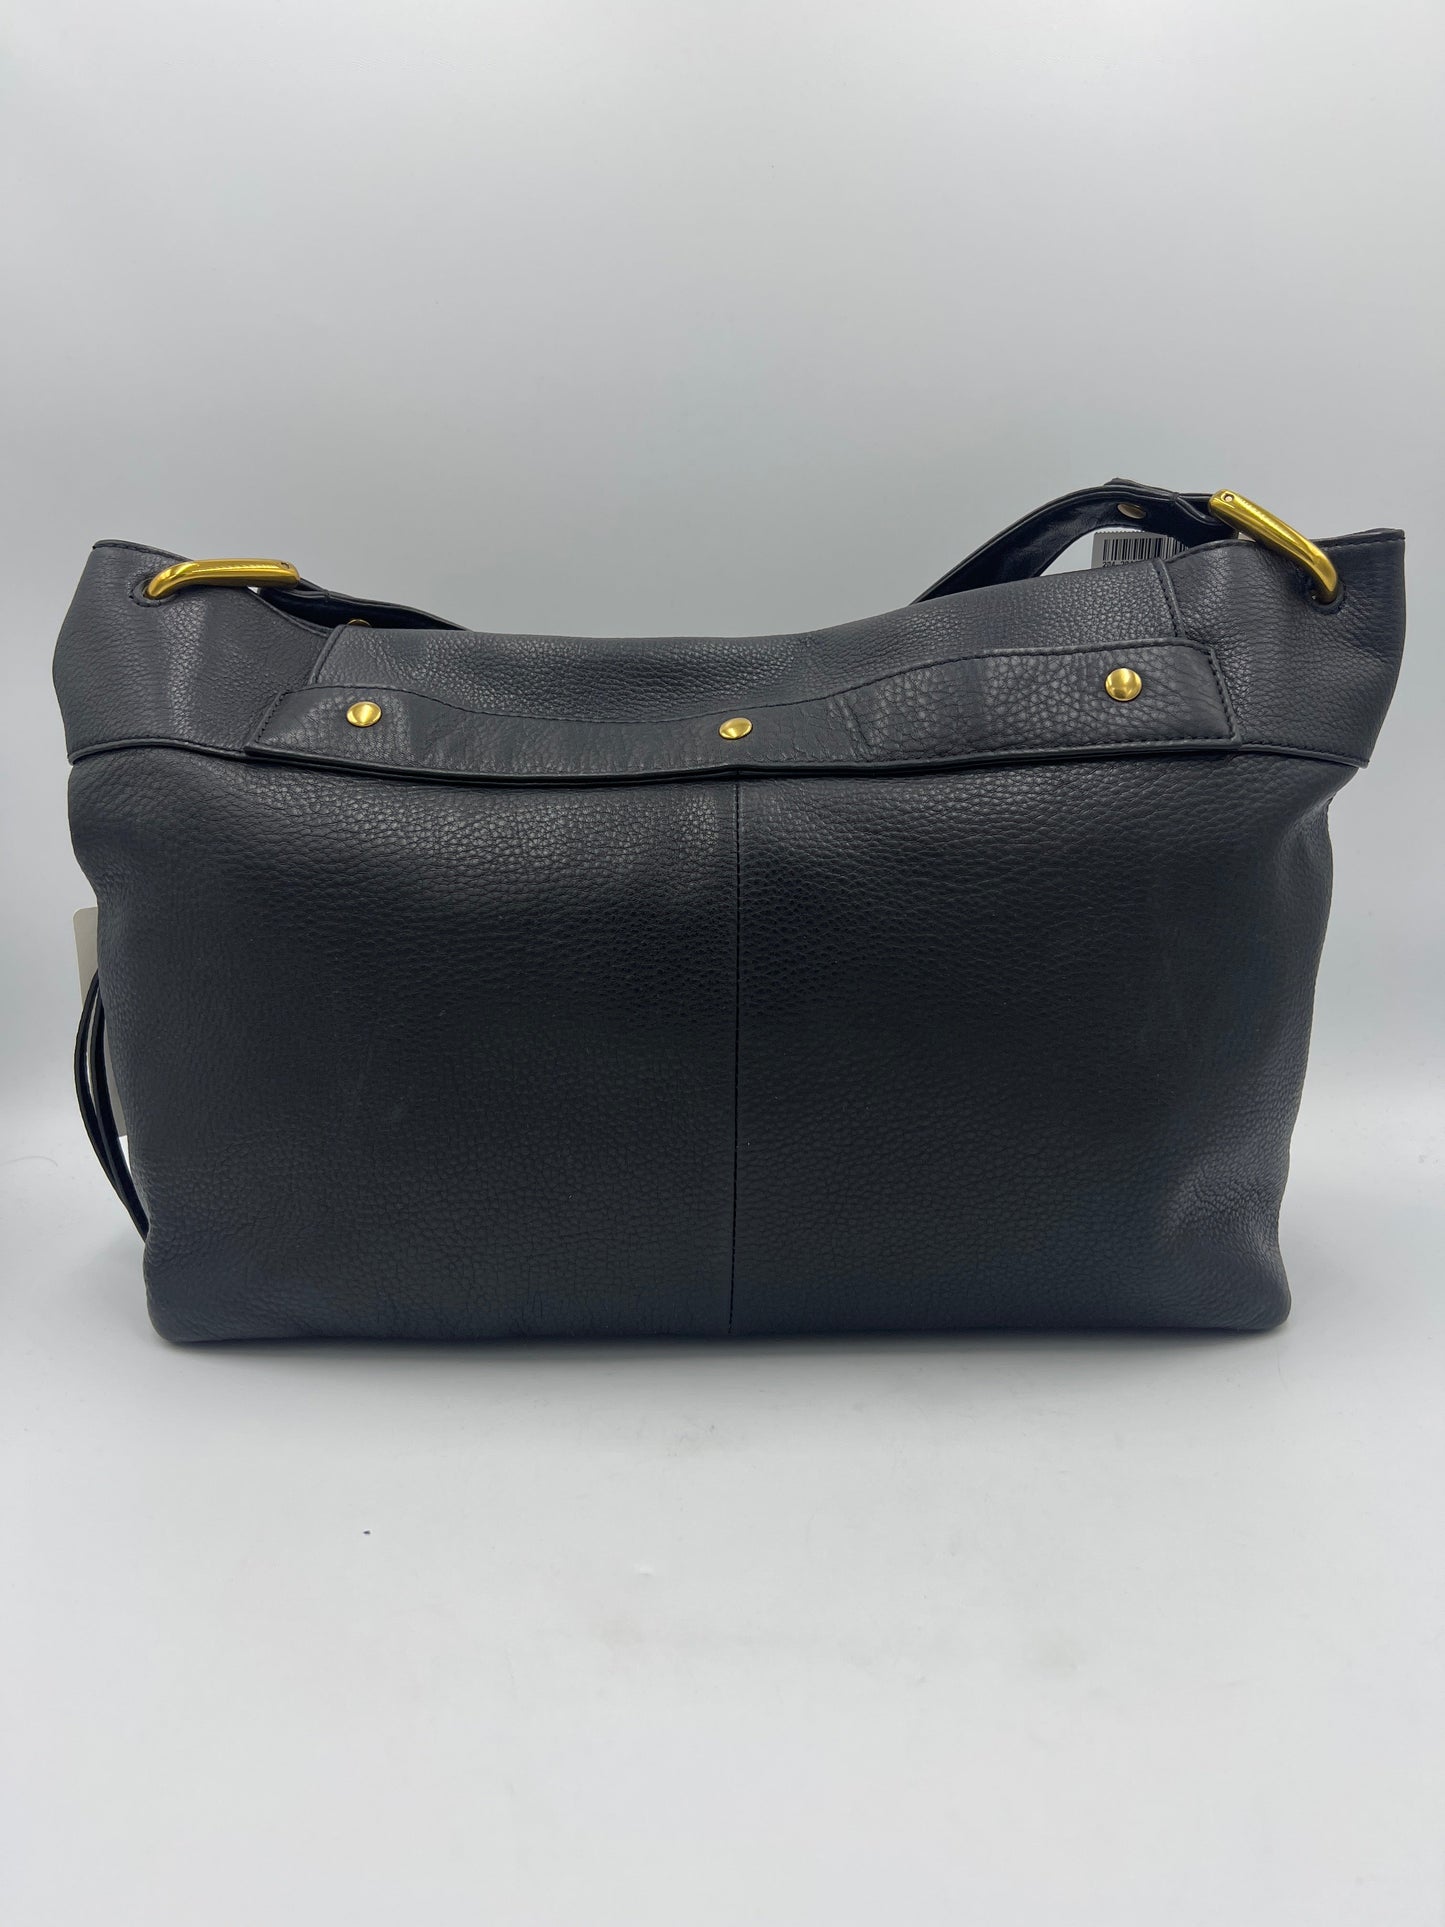 New! Handbag Designer By Hobo Intl  Size: Medium